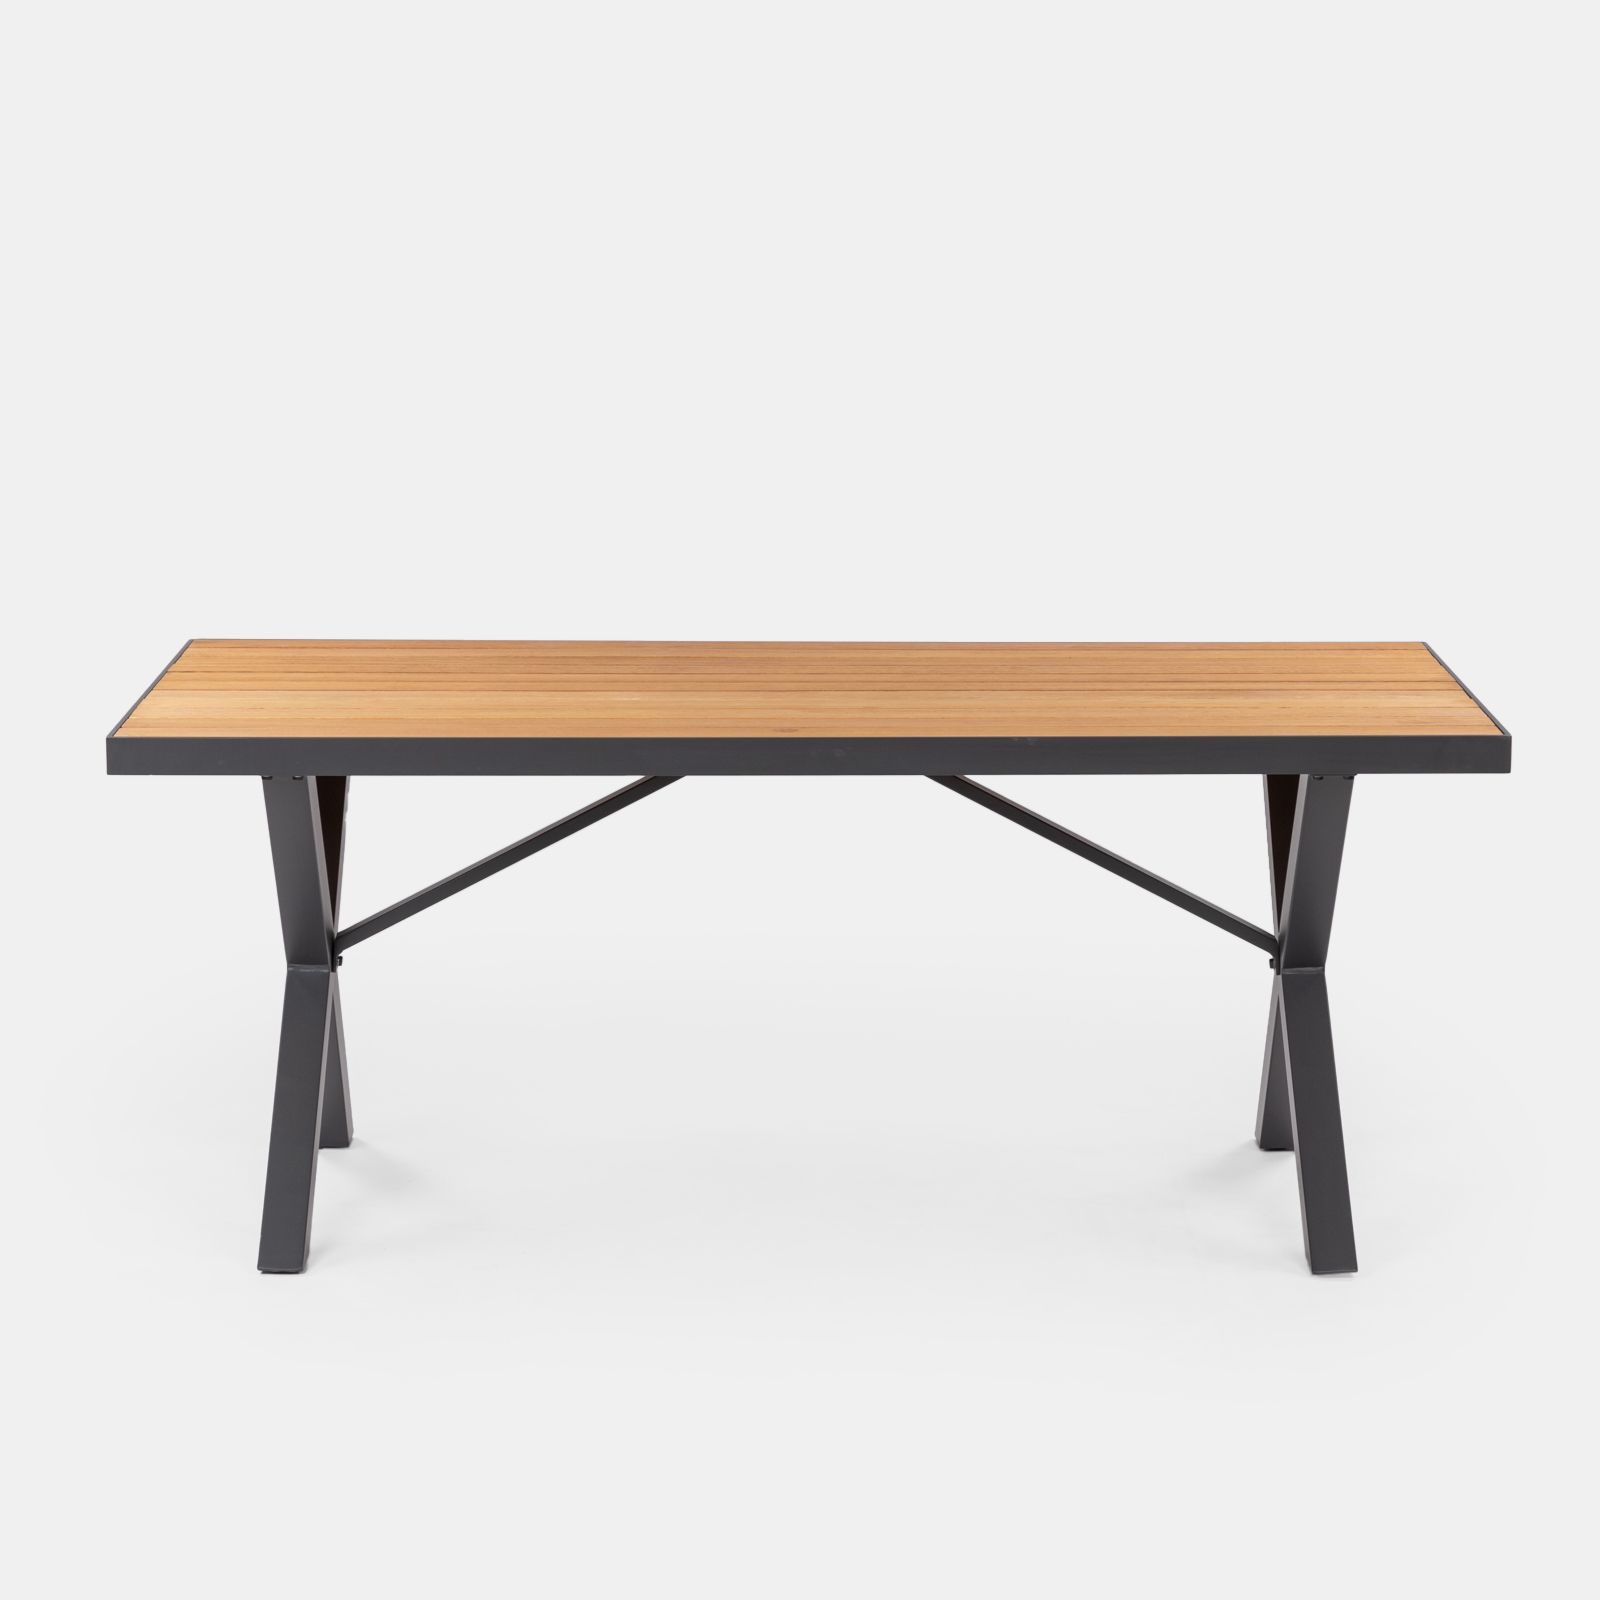 Set pranzo tavolo con top in legno 180x90 cm e 4 sedie con